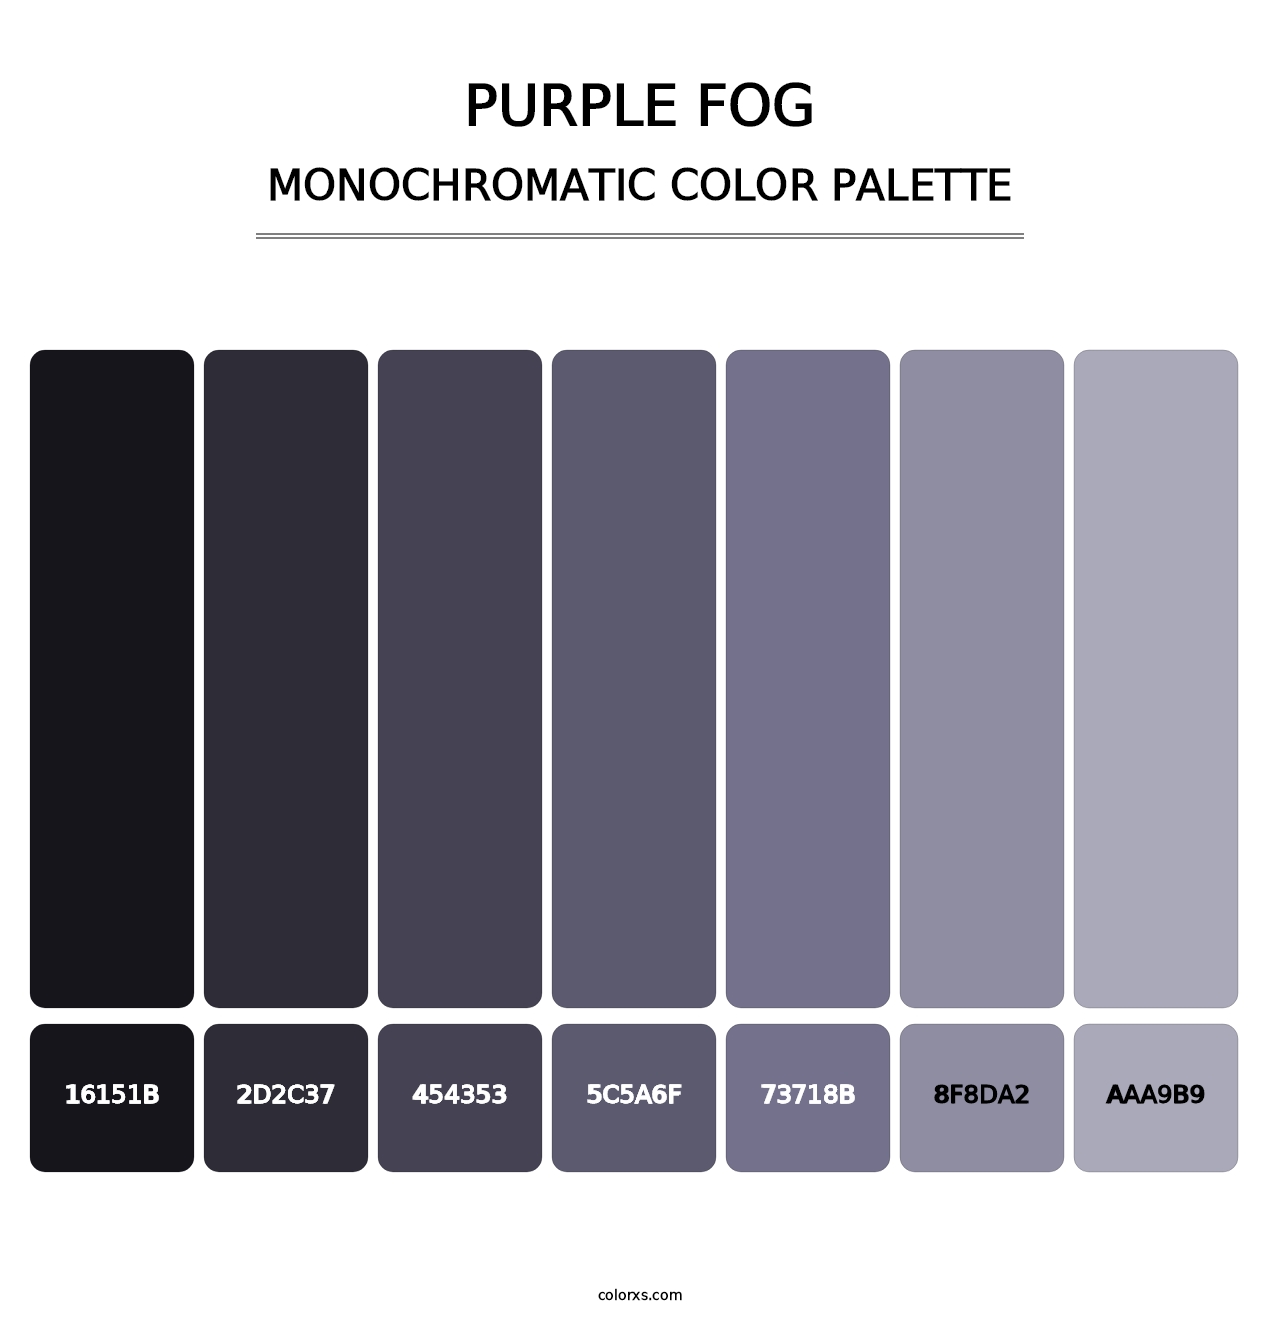 Purple Fog - Monochromatic Color Palette